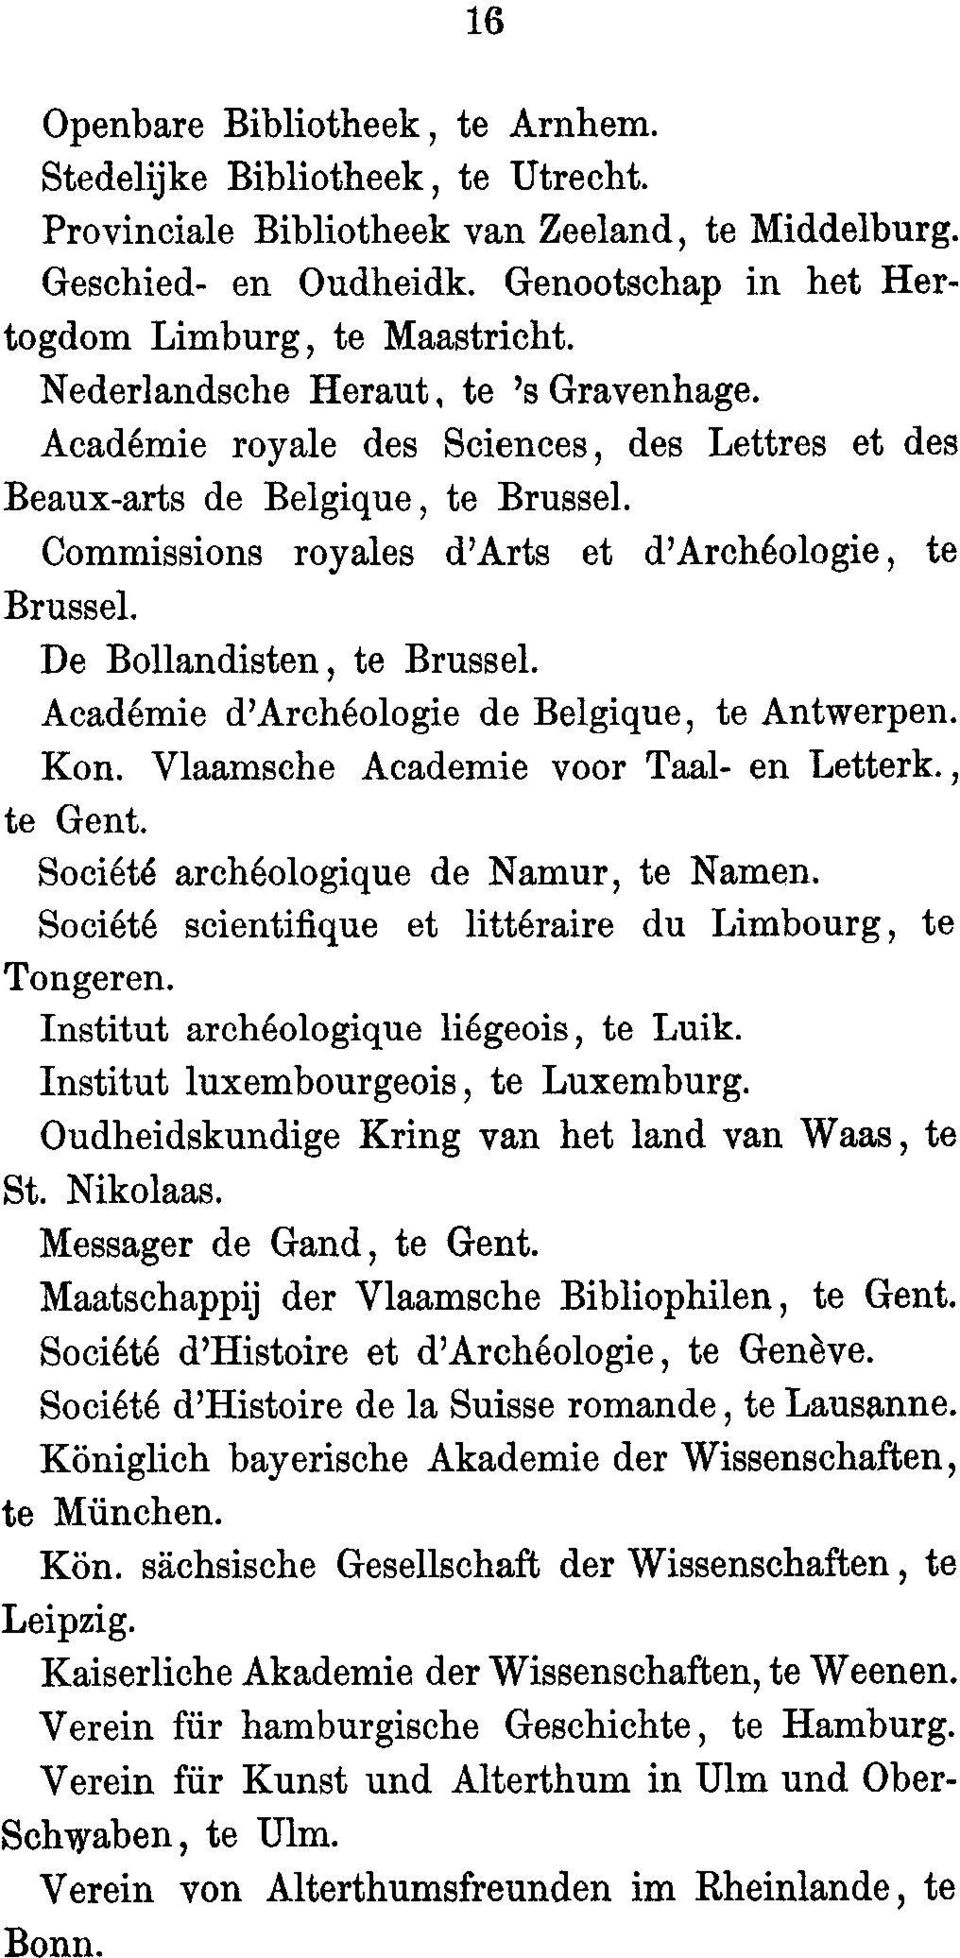 De Bollandisten, to Brussel. Academie d'archeologie de Belgique, to Antwerpen. Kon. Vlaamsche Academie voor Taal- en Letterk., to Gent. Societe archeologique de Namur, to Names.